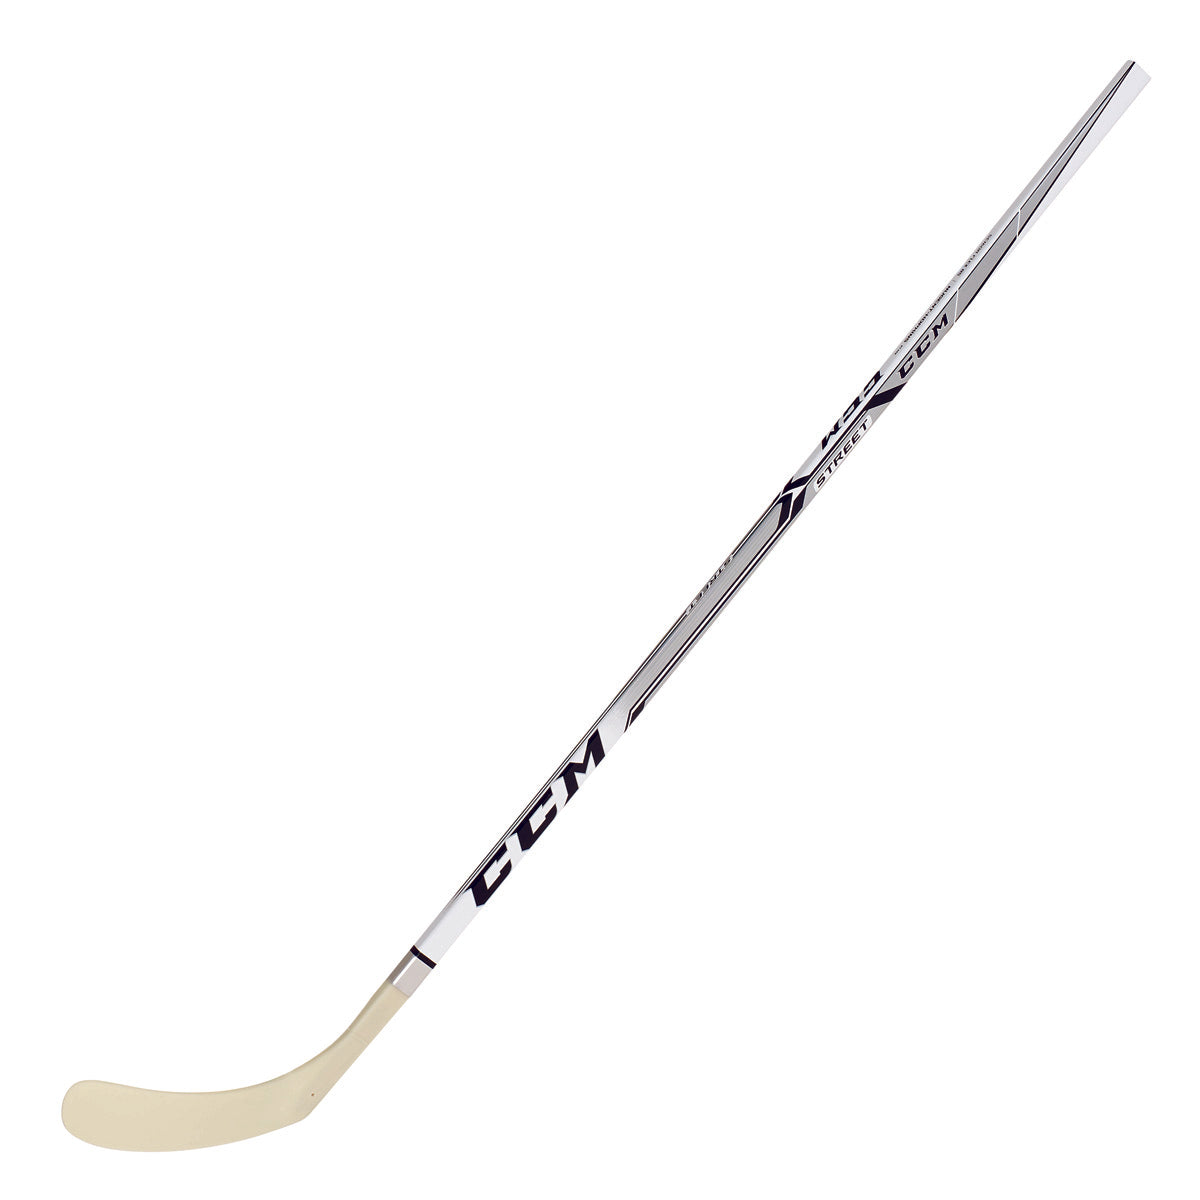 CCM Street Hockey Stick - Senior